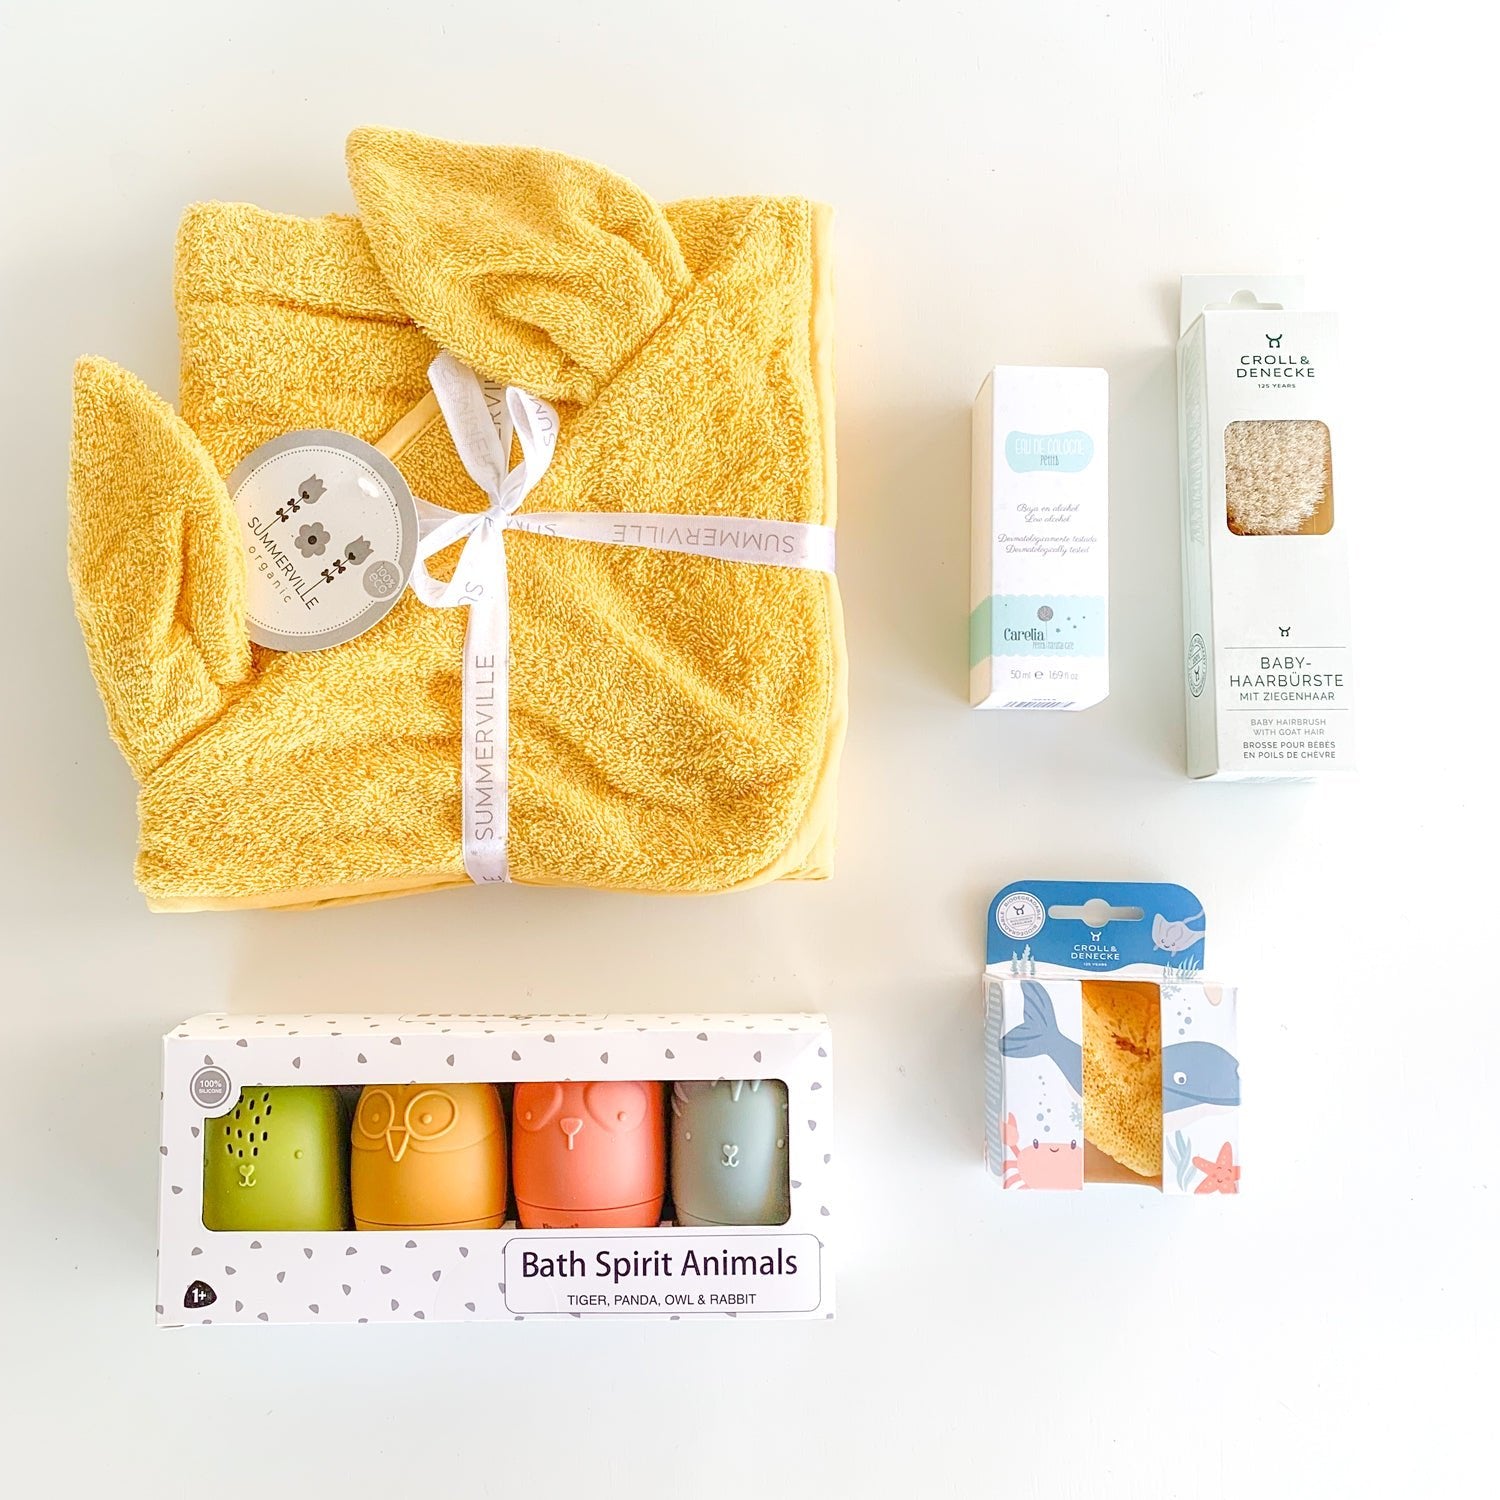 Pack regalo de bano que incluye capa con capucha, crema, cepillo de baño personalizado, esponja natural y juguetes de agua